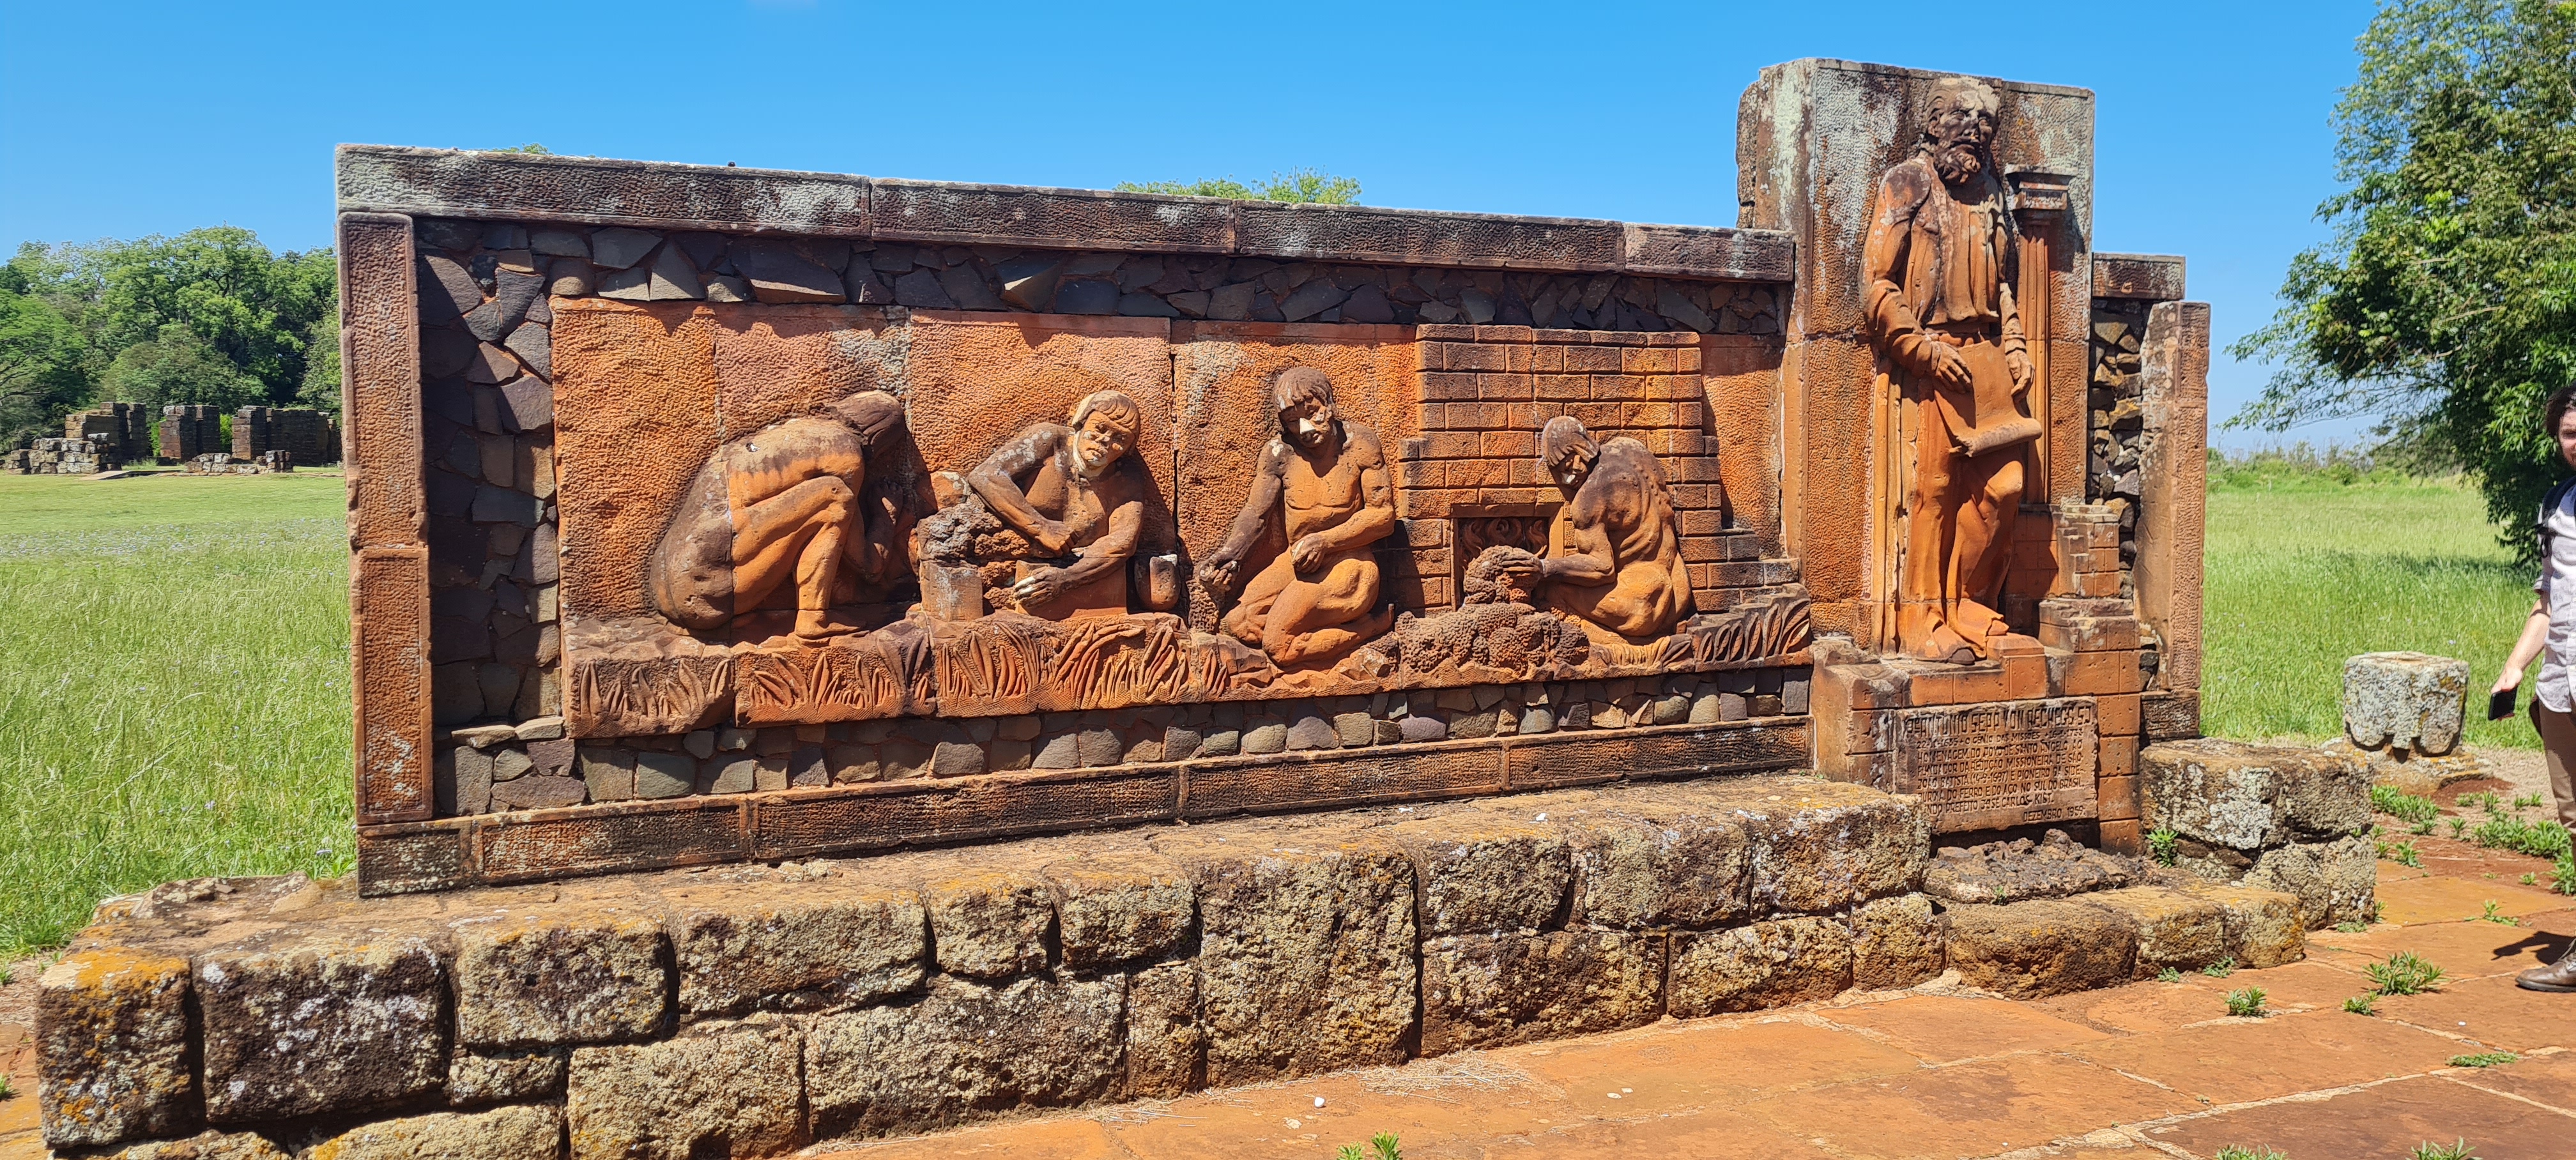 A fotografia colorida mostra uma pedra alaranjada com entalhes de indígenas trabalhando com ferro ao lado de um padre